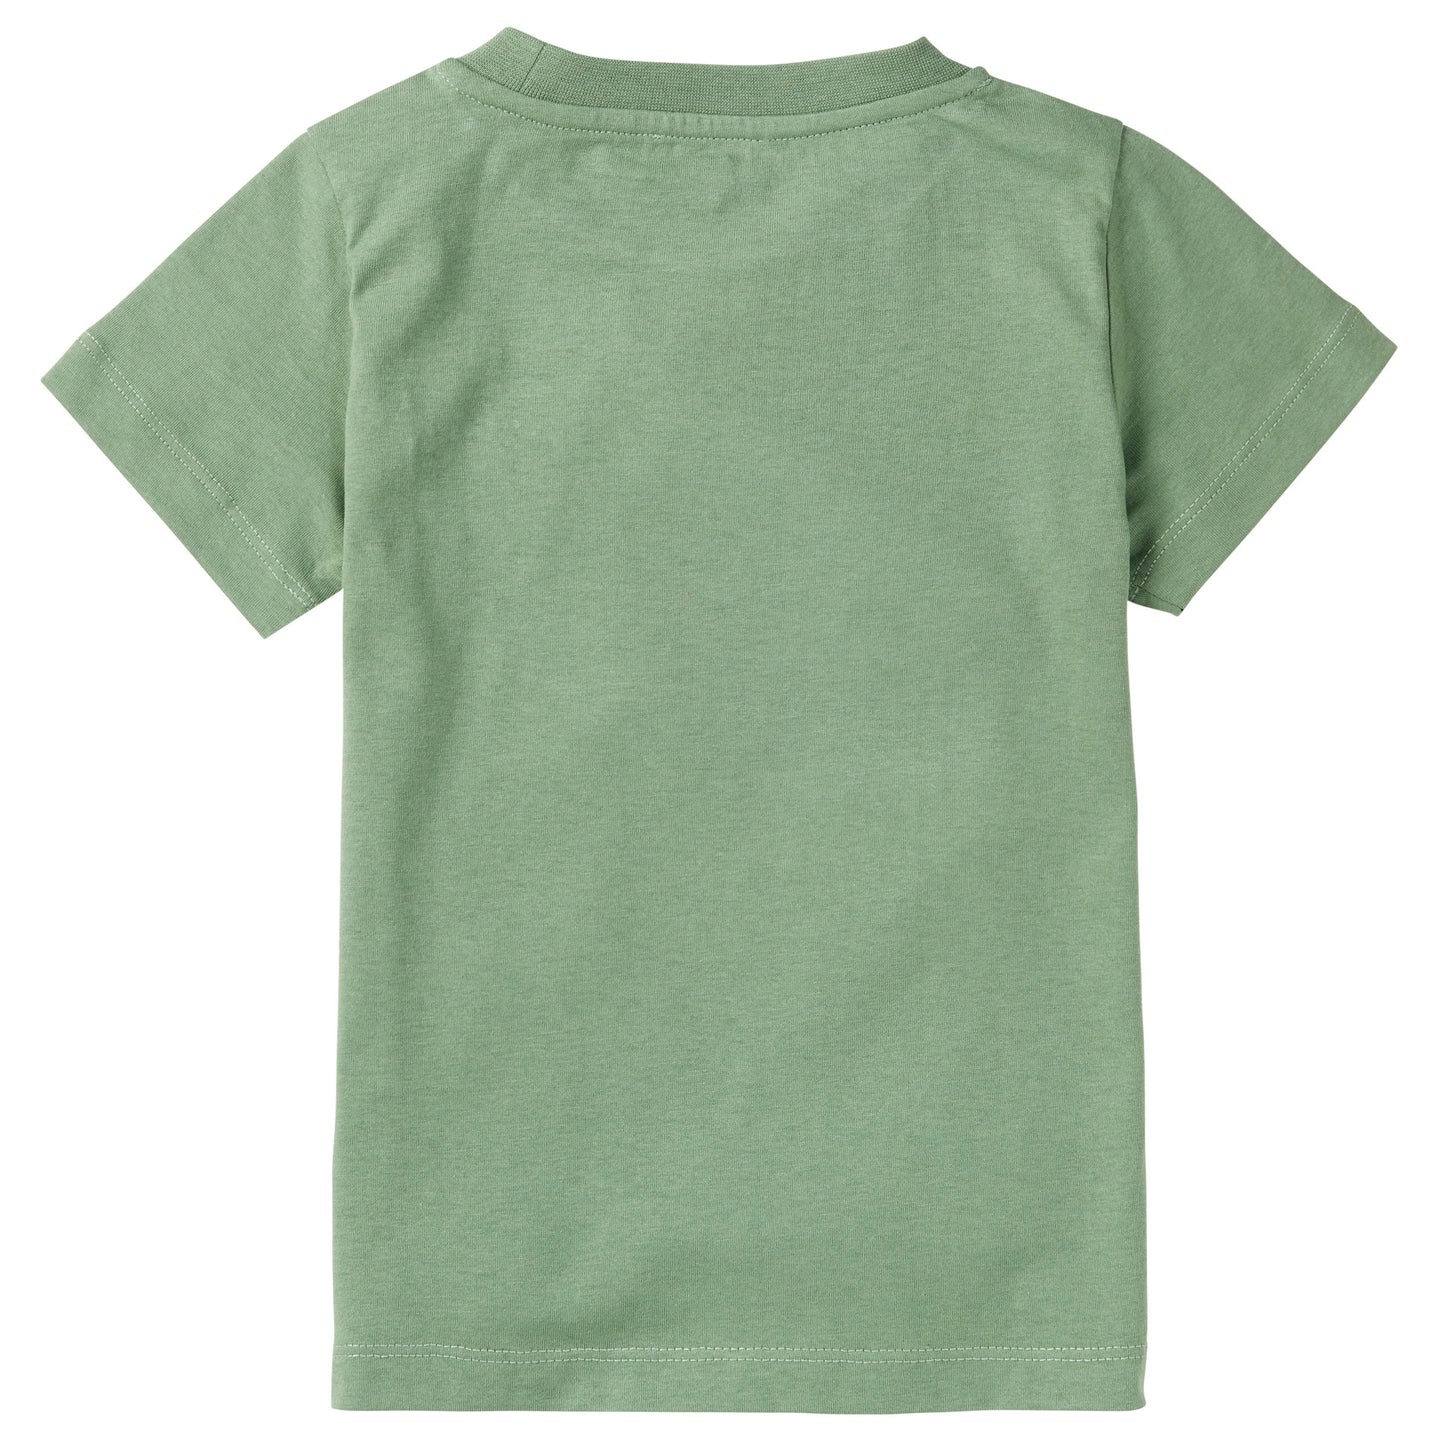 T-shirt Green